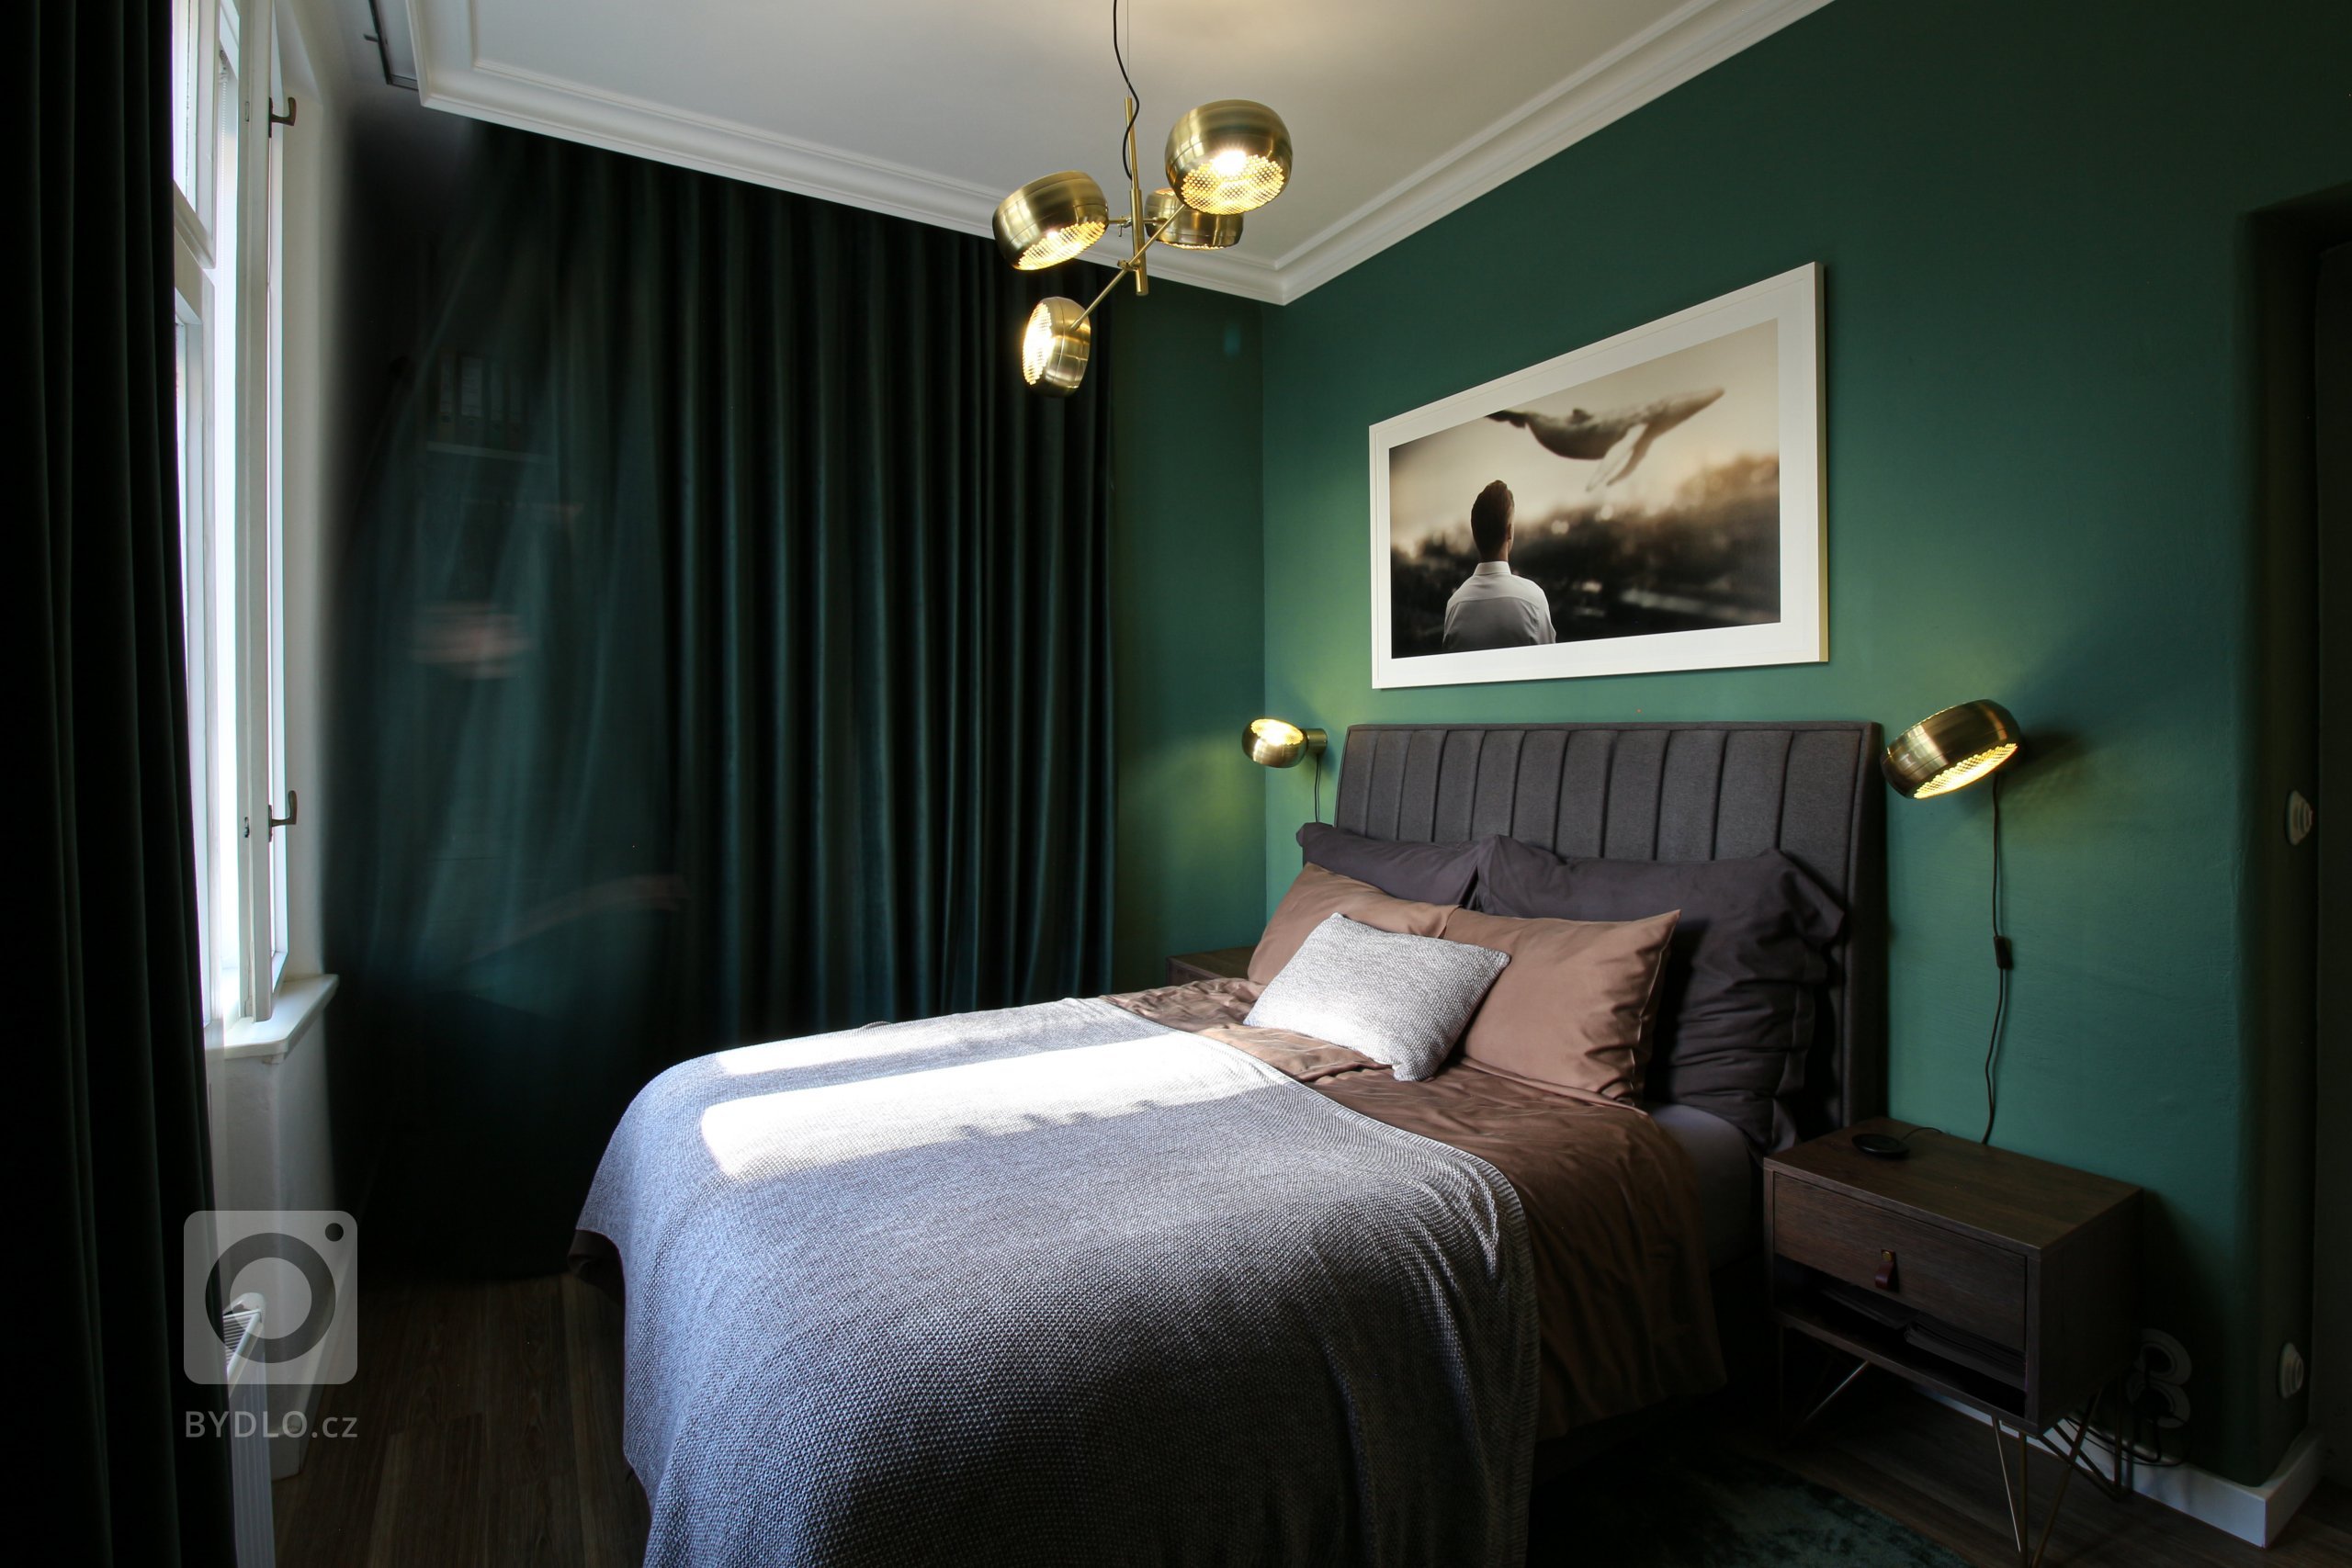 Ložnice je laděna do zelené barvy se zlatými detaily. Celé pokoj je monochromatický od zeleného koberce, stěn až po sametové závěsy. Zelenou barvu doplňuje…